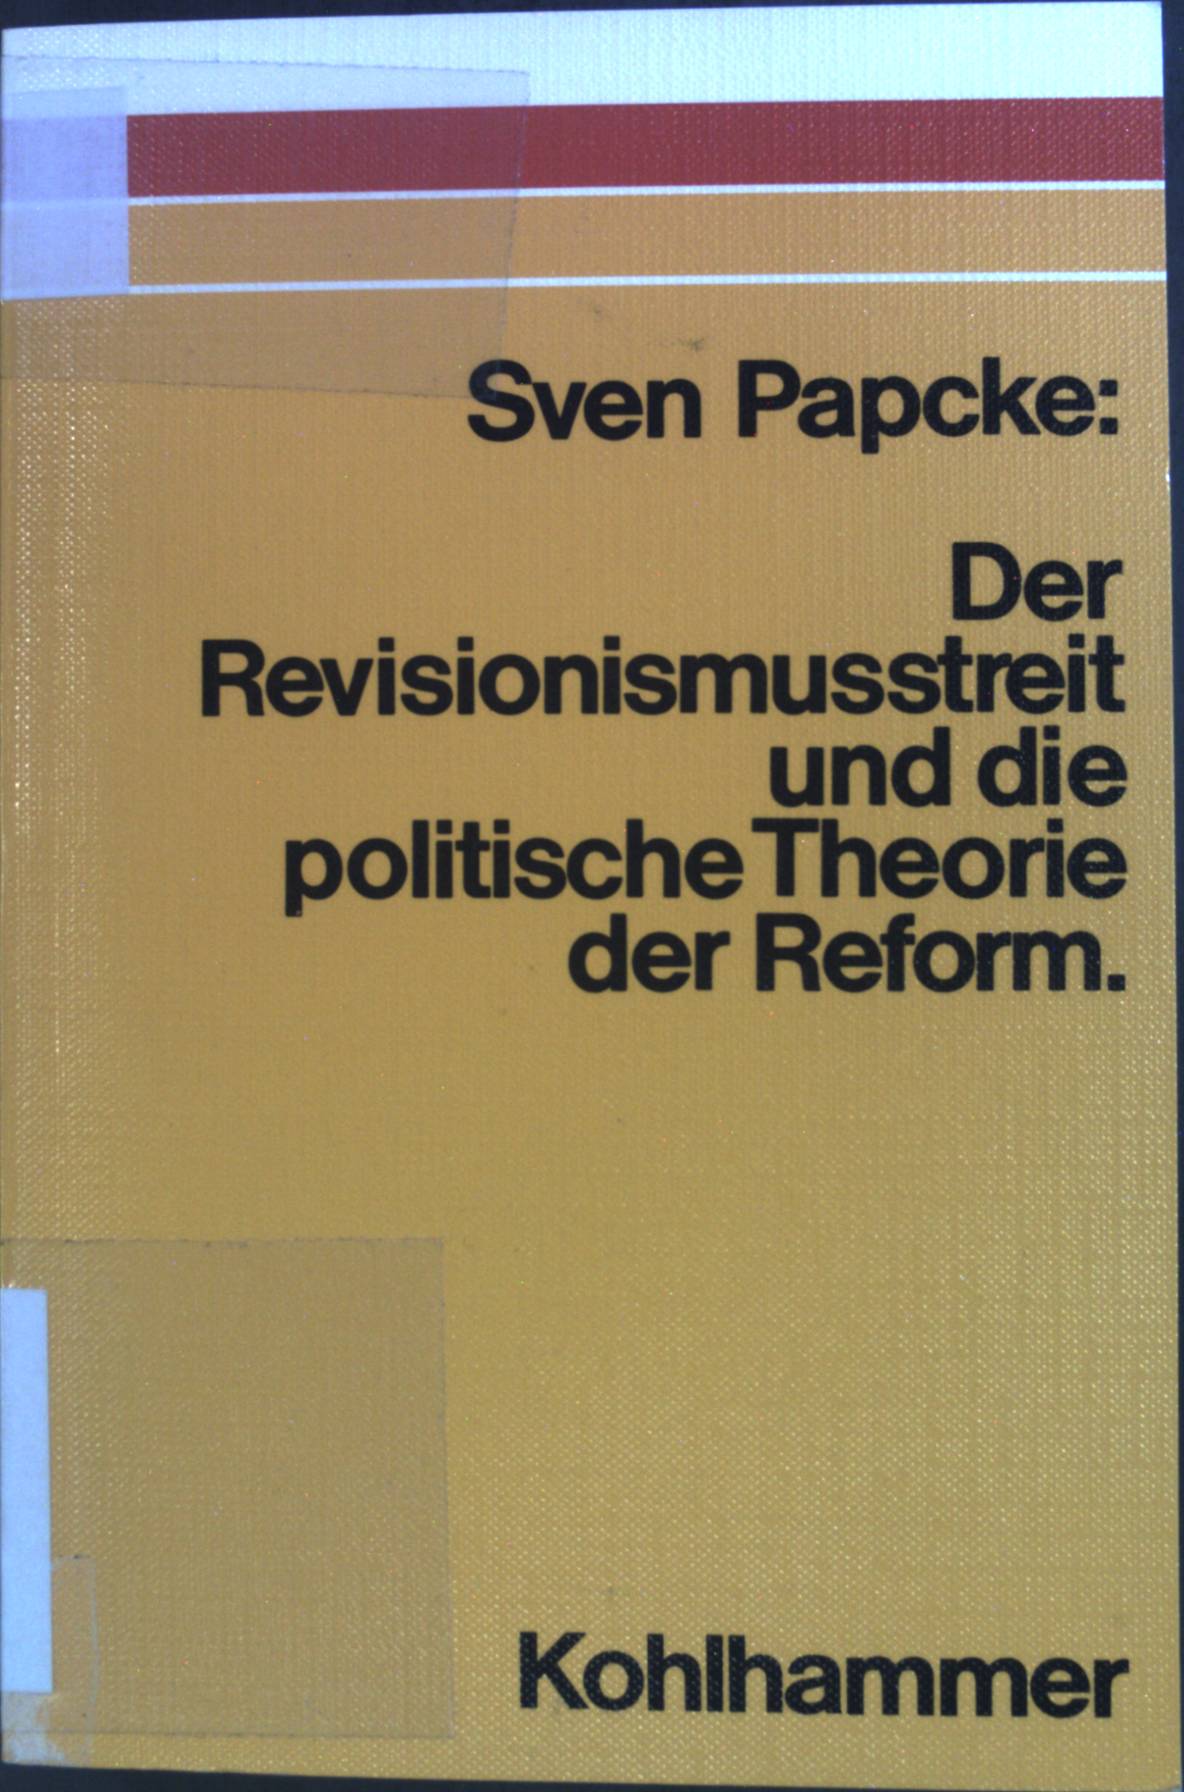 Der Revisionismusstreit und die politische Theorie der Reform : Fragen u. Vergleiche. - Papcke, Sven